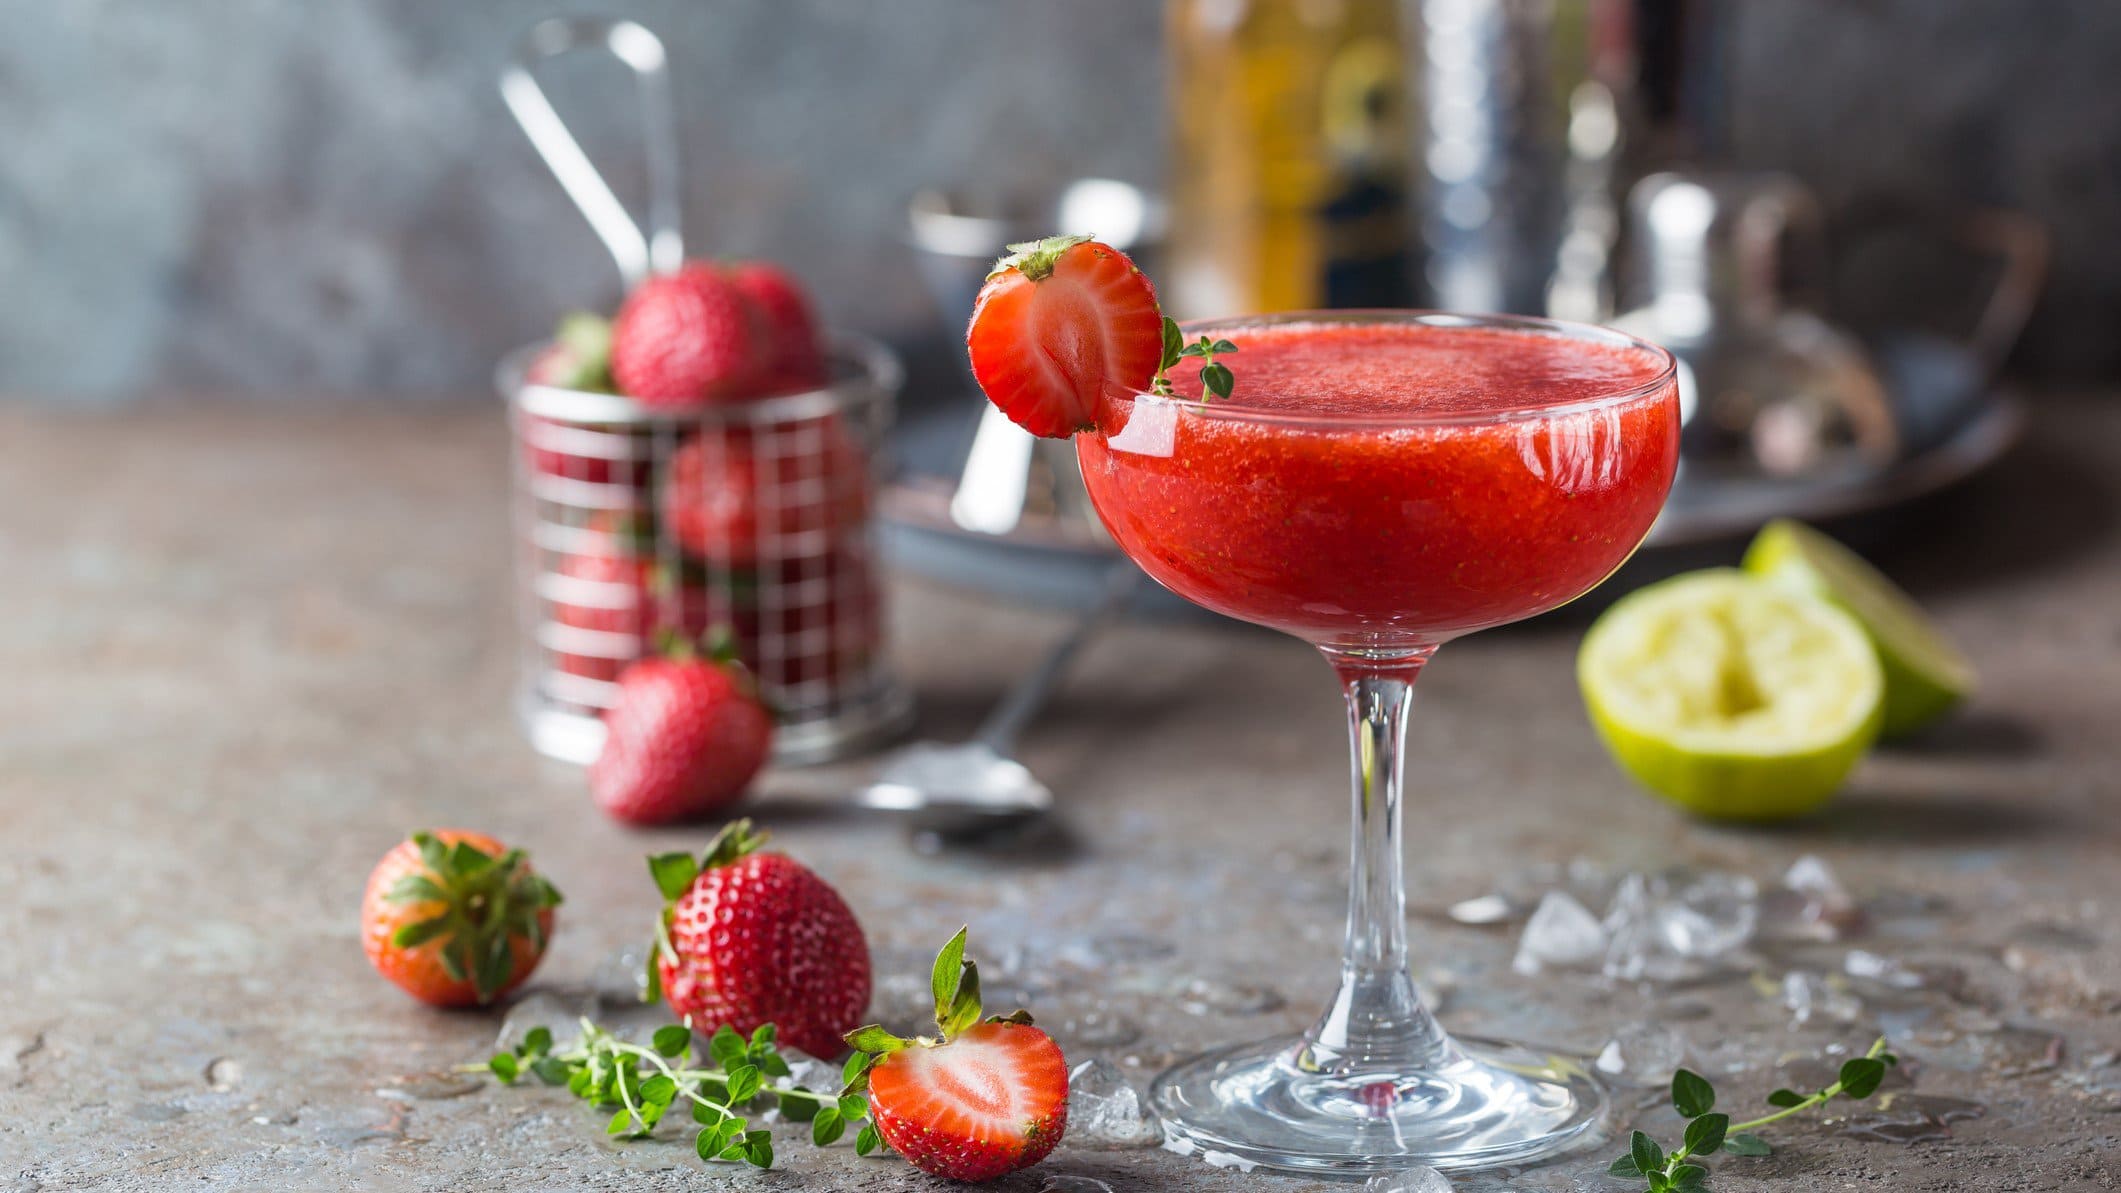 Frozen Strawberry Margarita in Martini-Glas auf braunem Untergrund vor grauem Hintergrund. Dahinter unscharf Erdbeeren im Metallkorb und Cocktail-Zubehör. Auf dem Untergrund Limetten, Erdbeeren und Thymian verteilt. Frontalansicht.